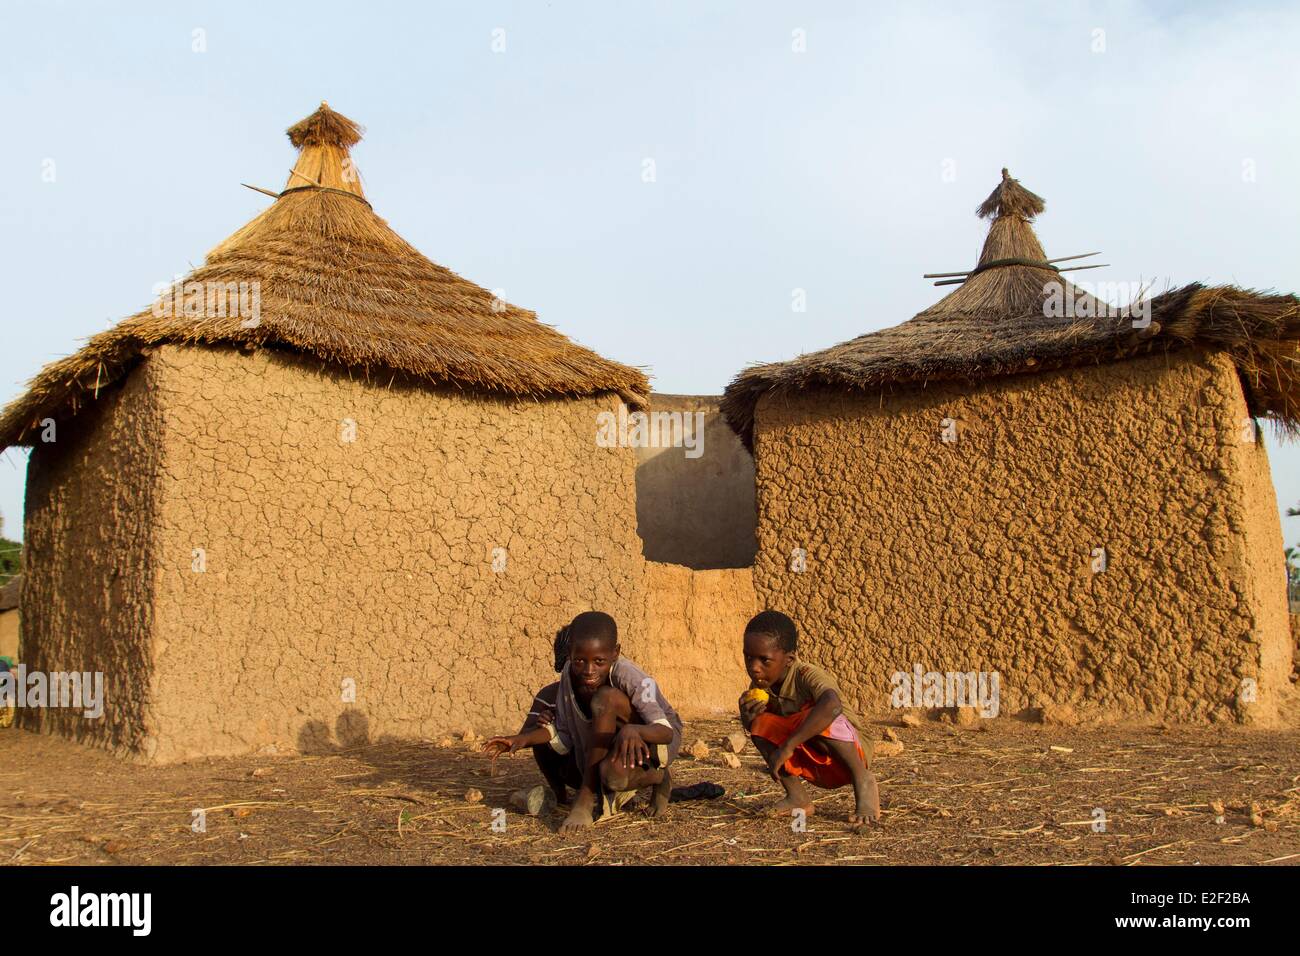 Le Burkina Faso, dans la région de village sénoufo Banque D'Images